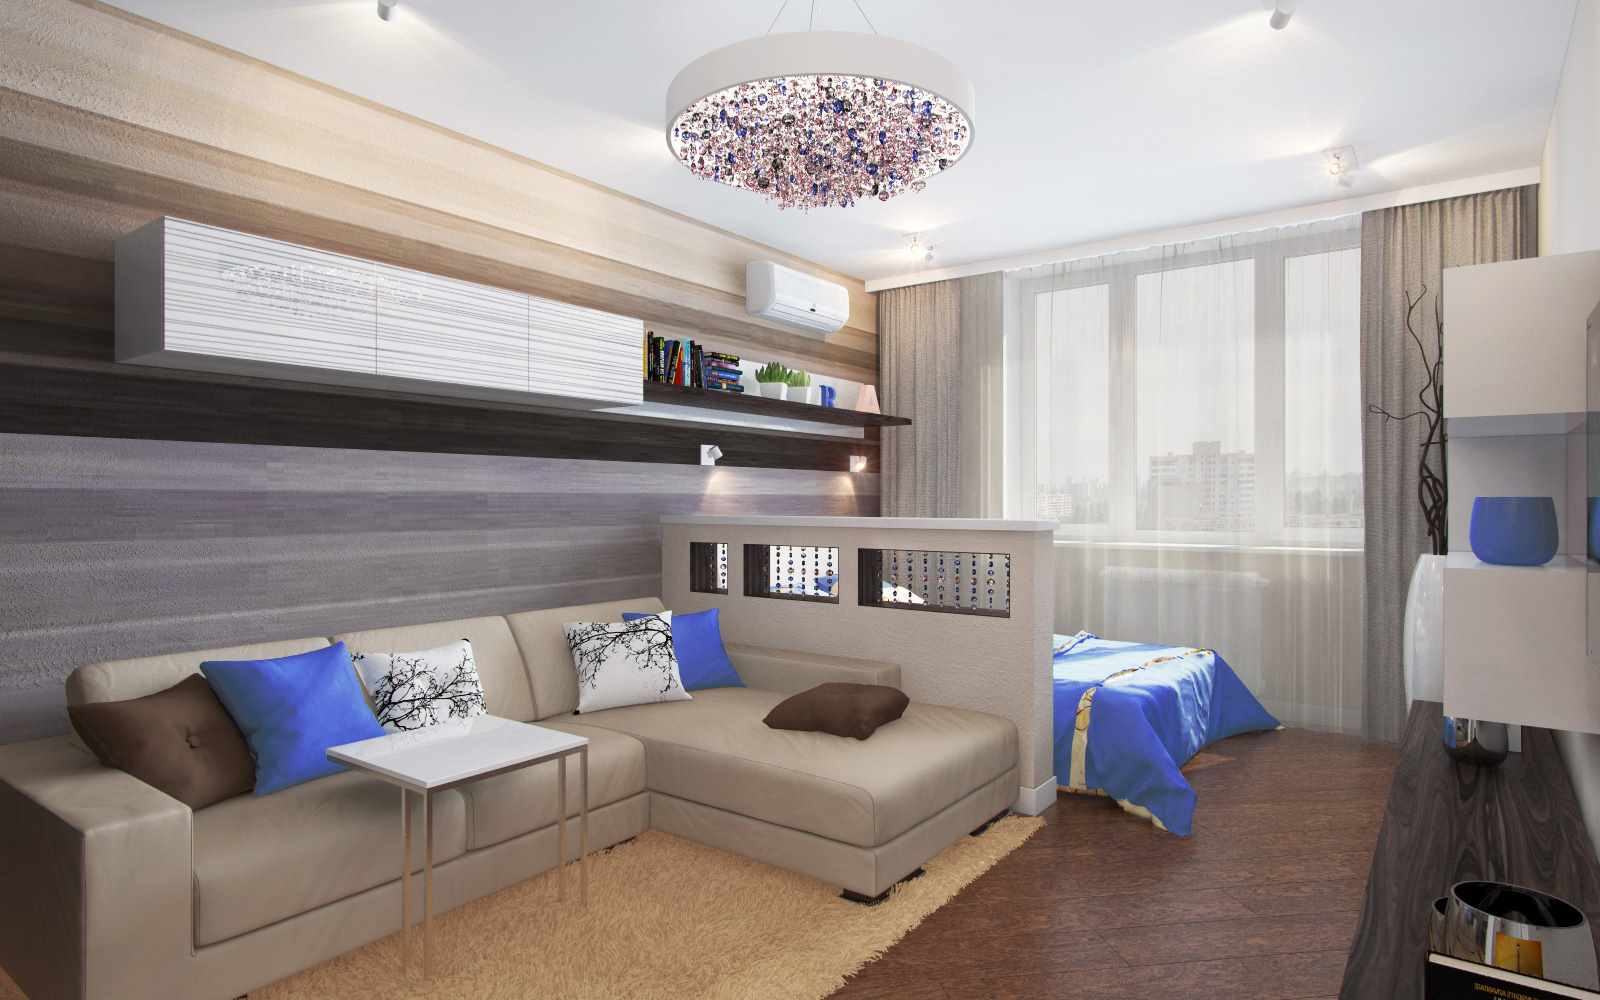 19-20 m2'lik bir oturma odasının parlak tasarımı fikri